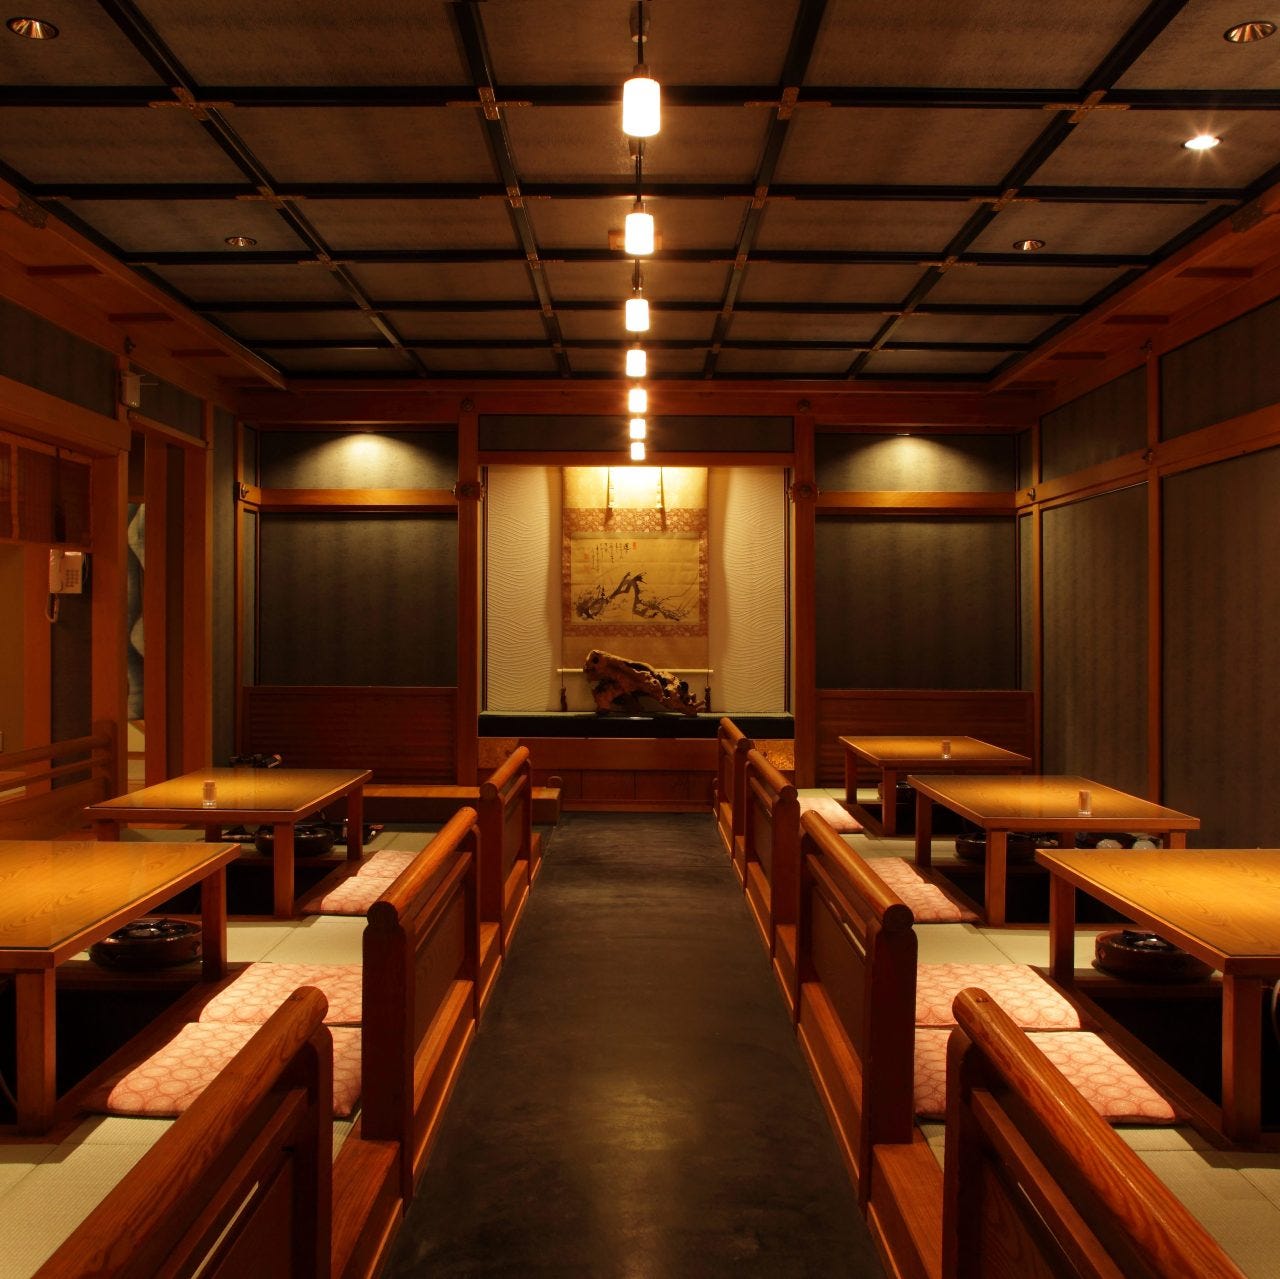 22年 最新グルメ 京都 個室のある料亭 レストラン カフェ 居酒屋のネット予約 京都版